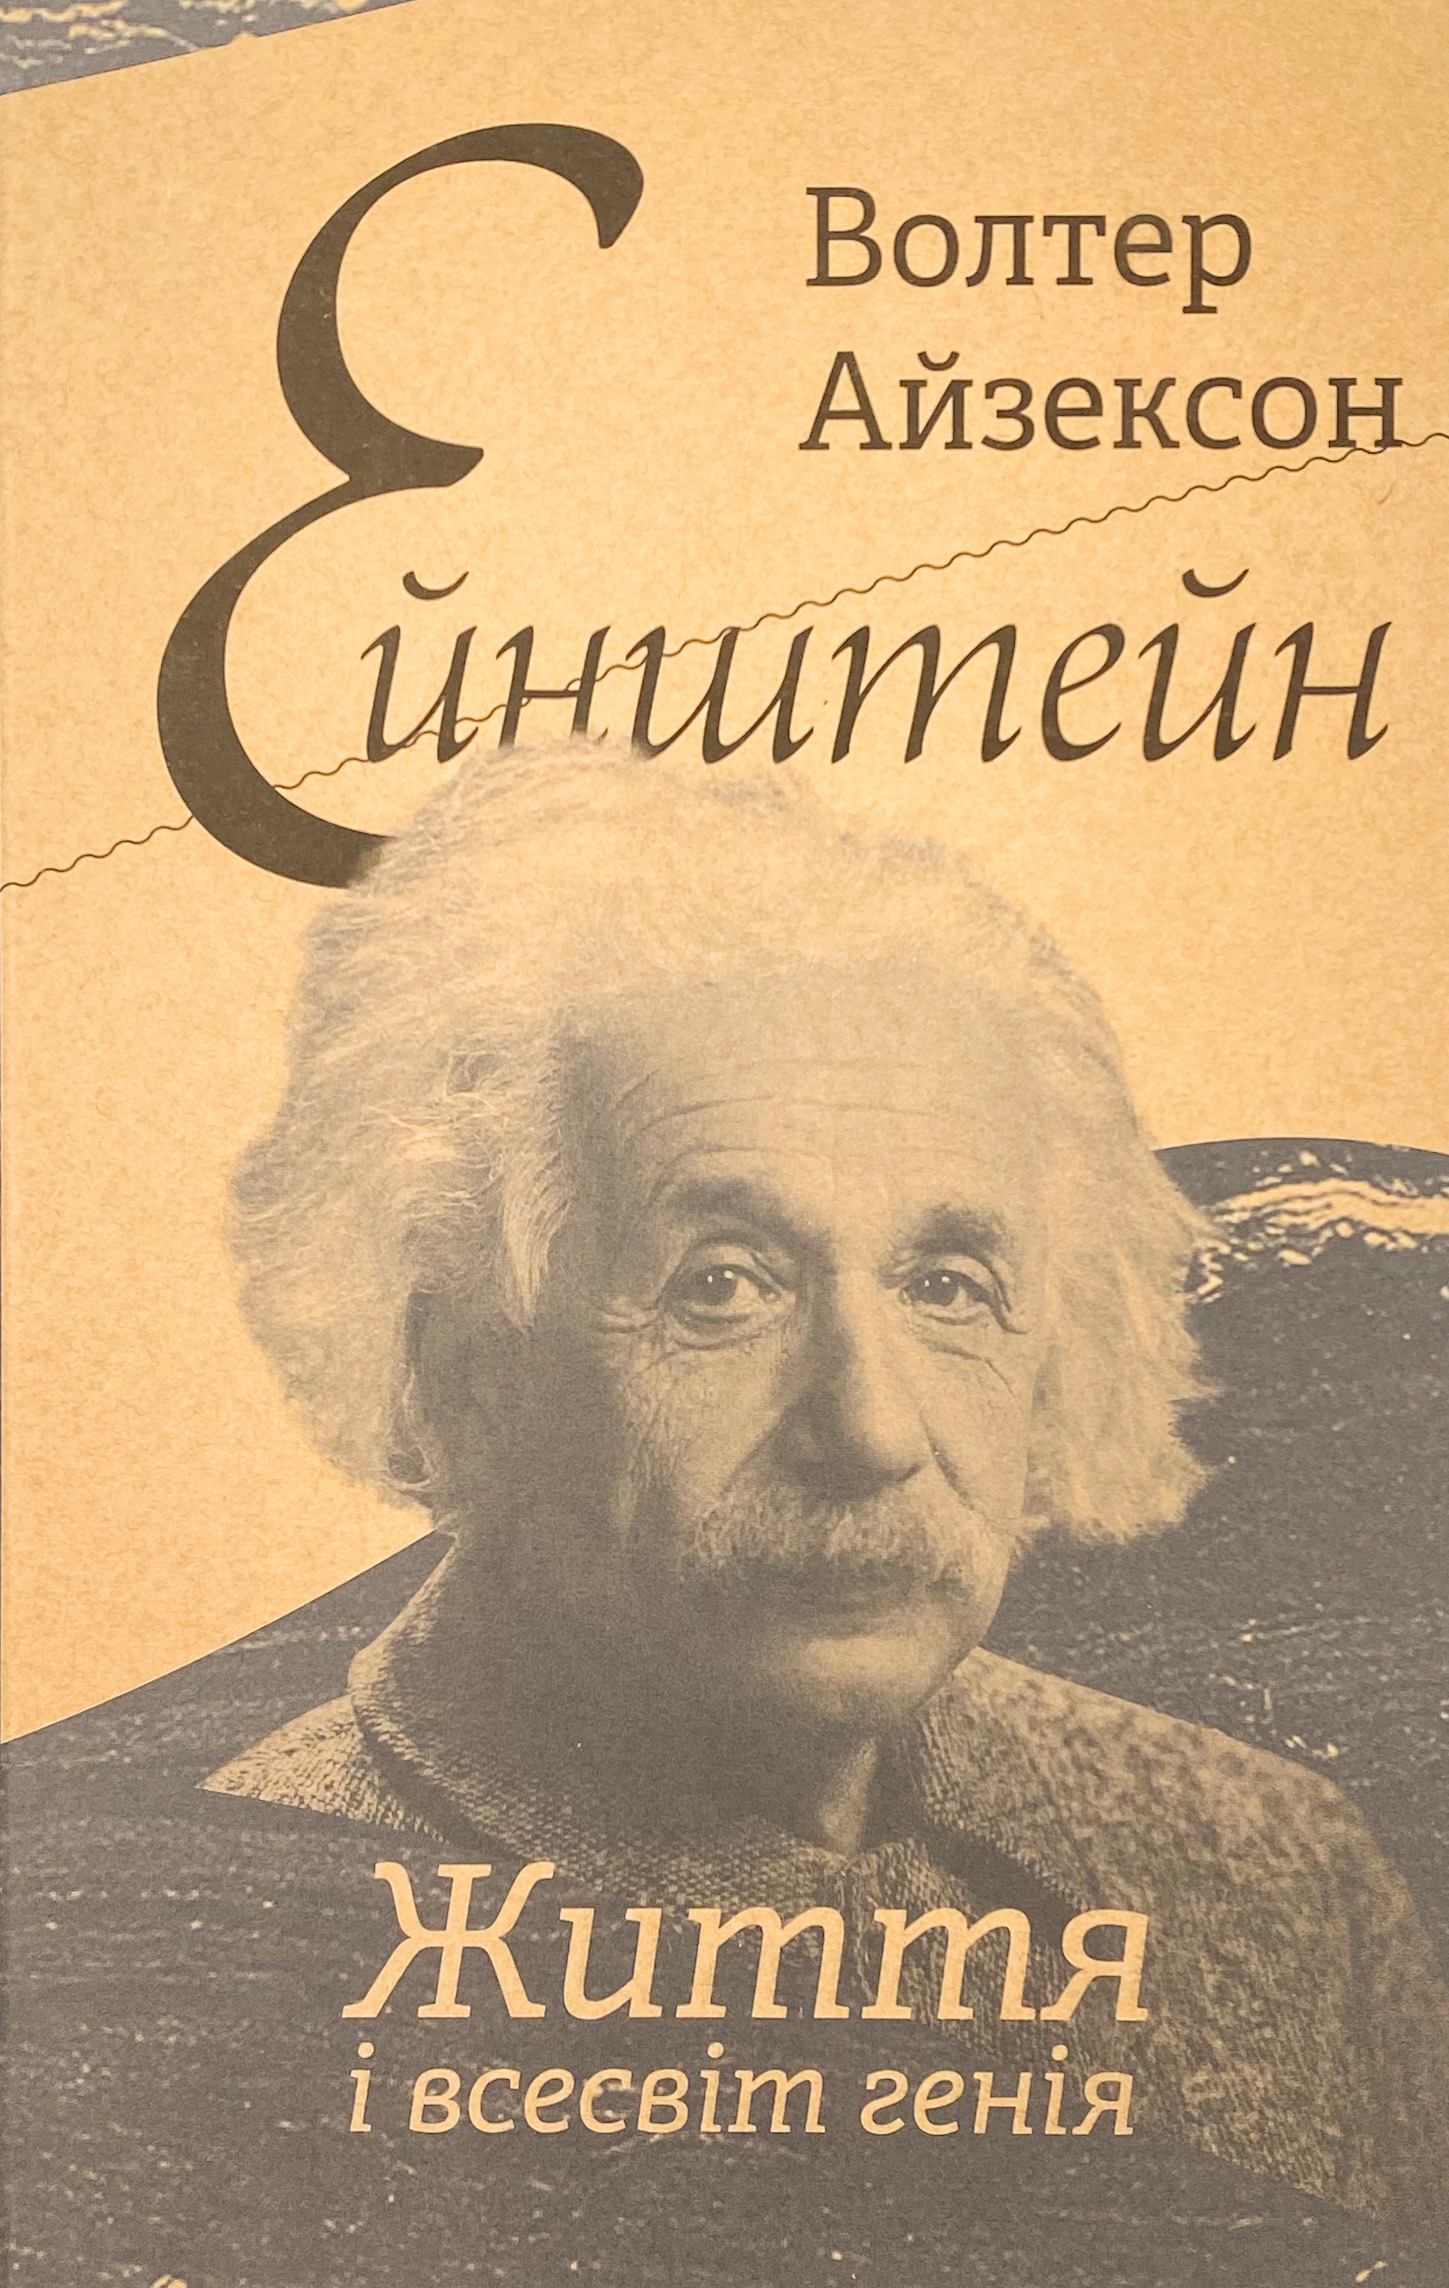 Ейнштейн. Життя і всесвіт генія